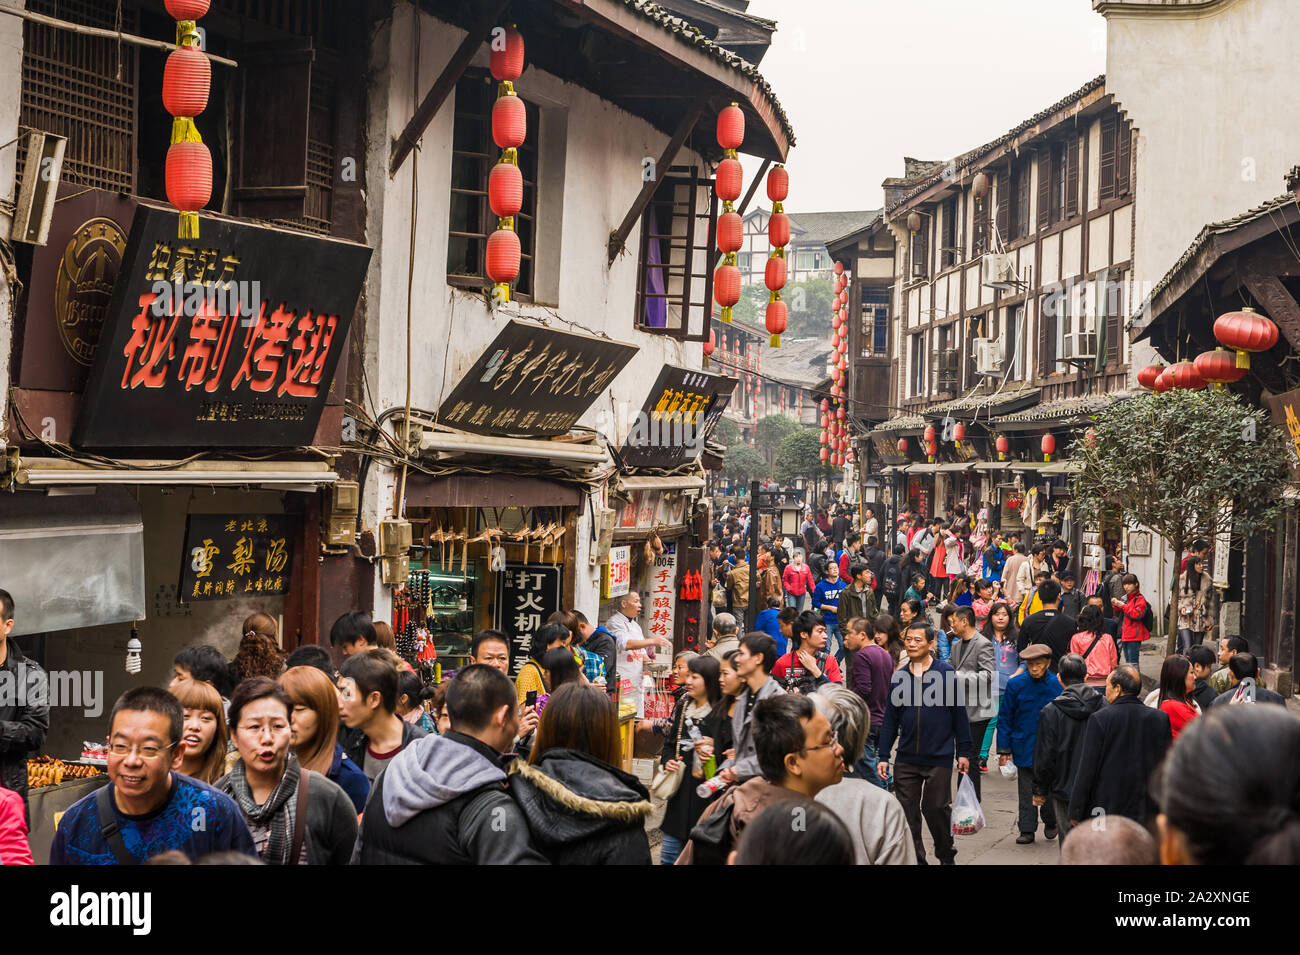 Chongqing, Chine, 21 Nov 2012 : foule immense dans l'ancienne ville de Ciqikou avec maisons historiques. Banque D'Images